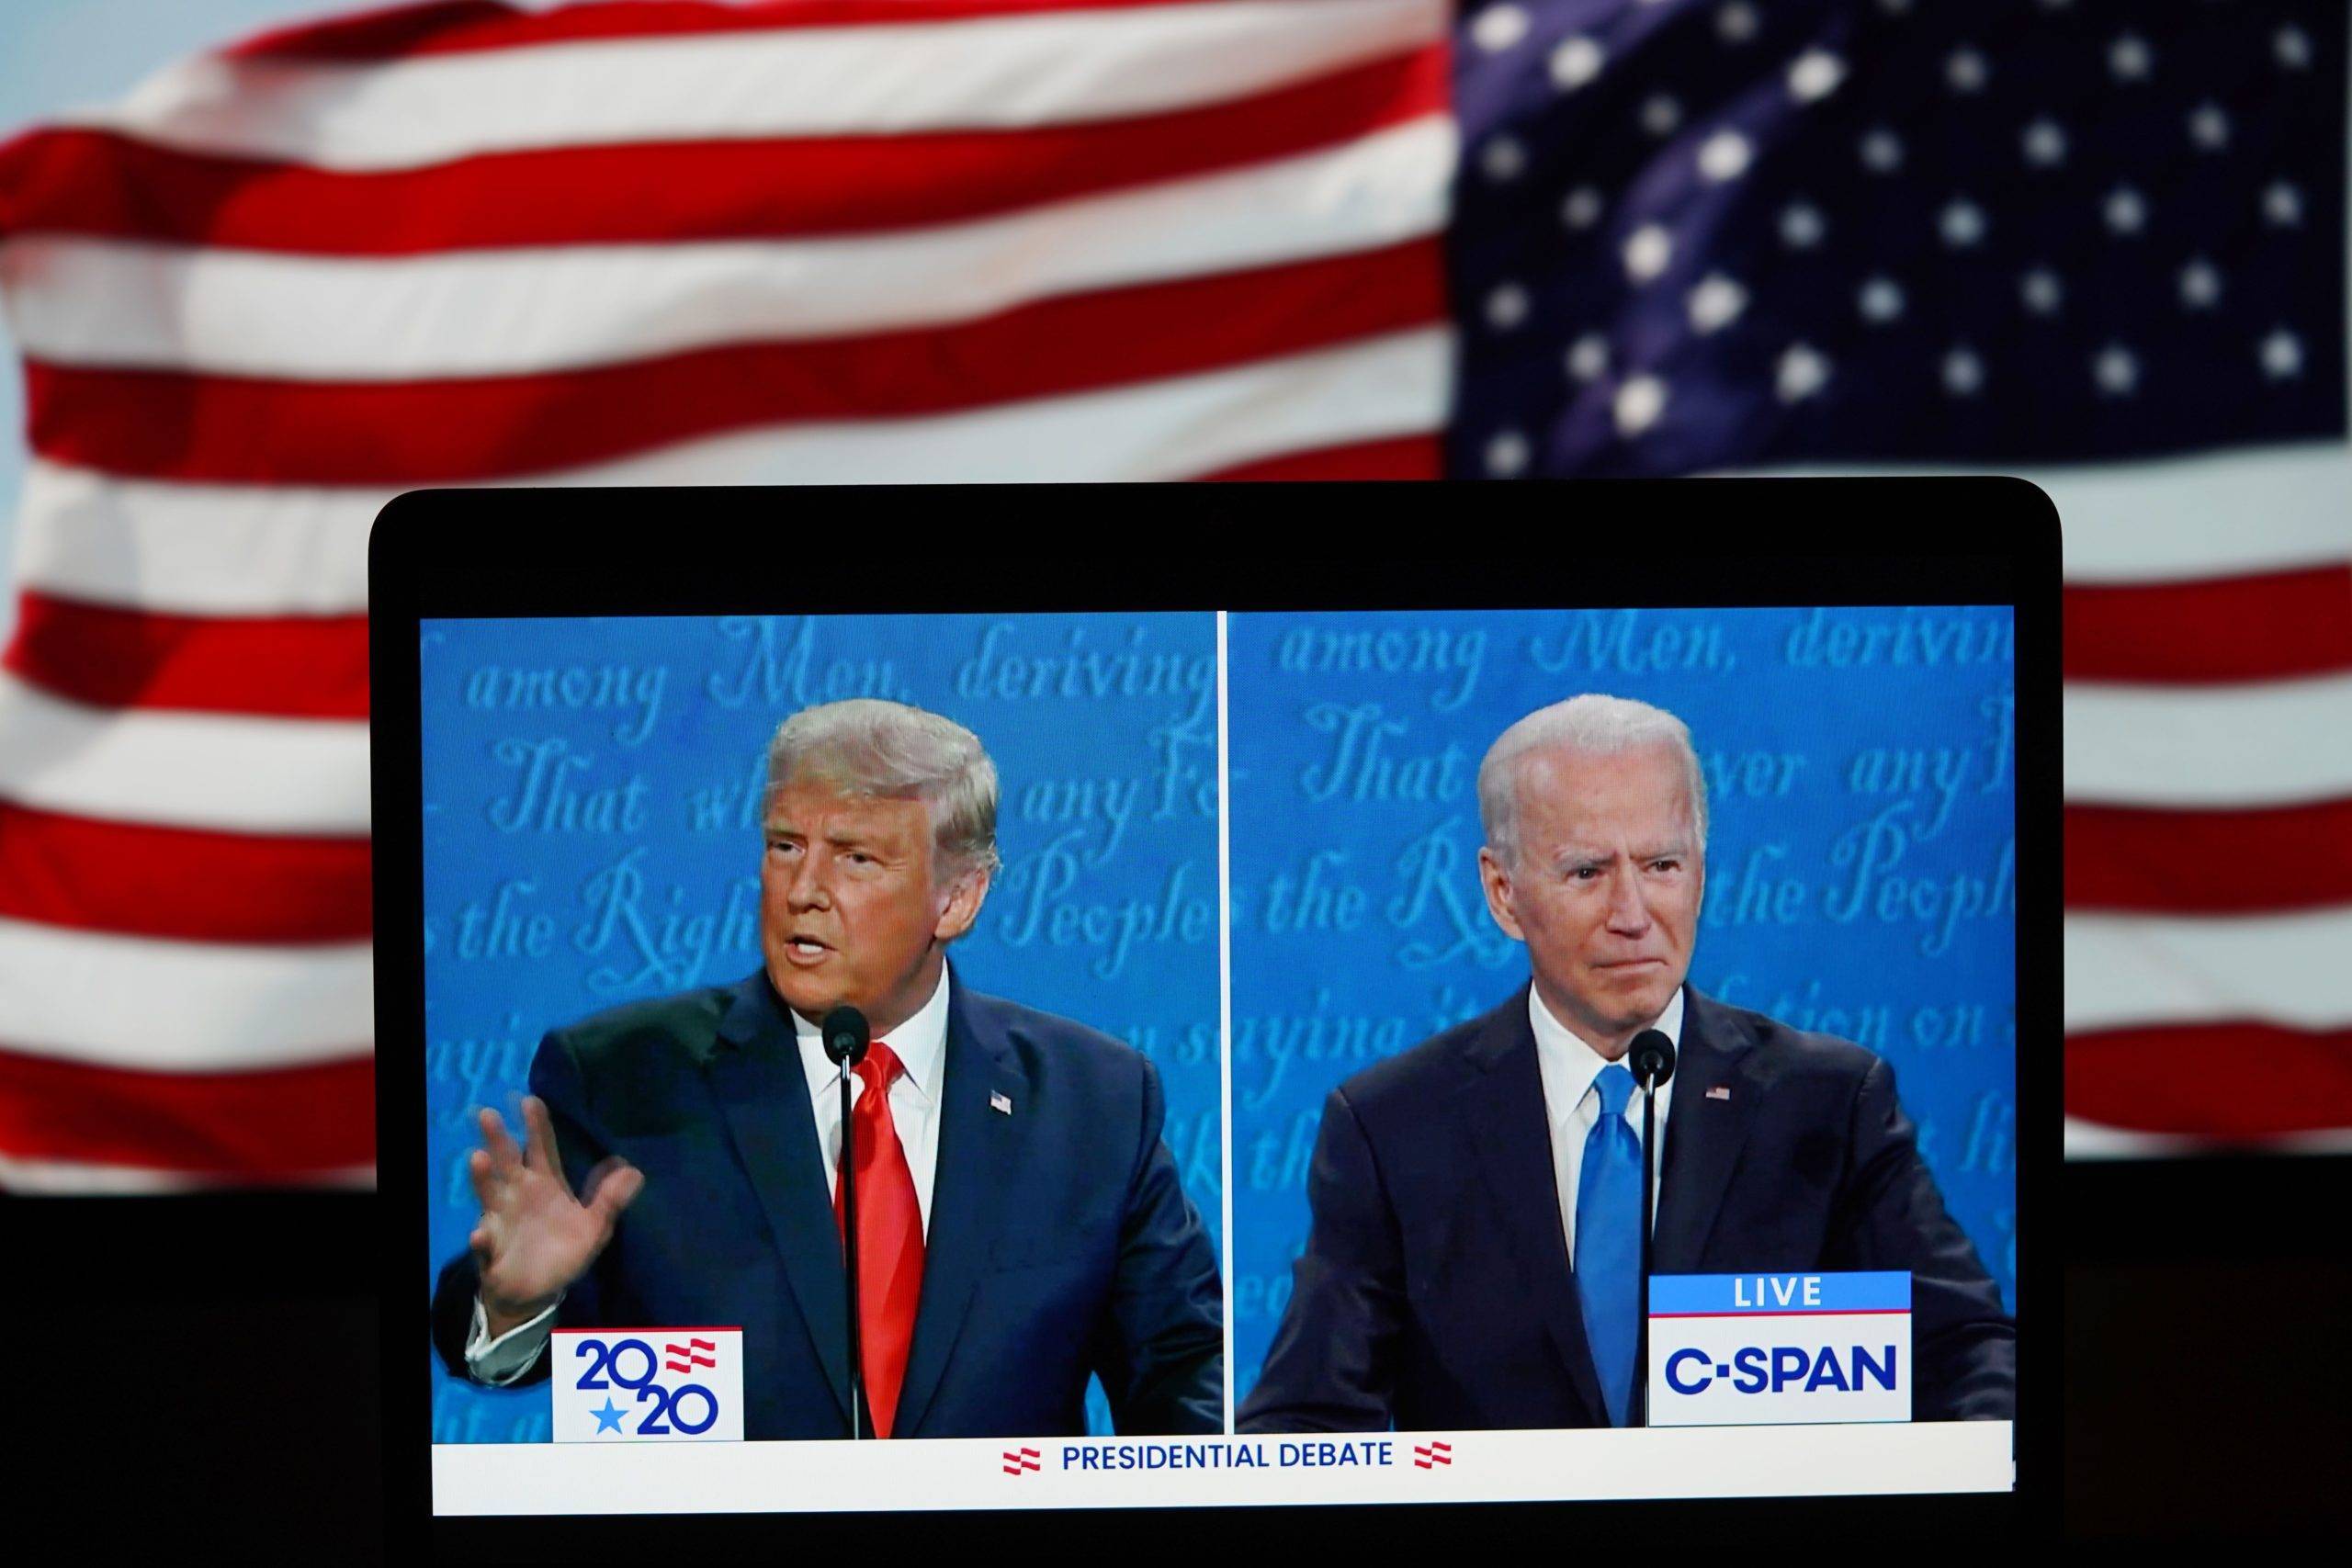 La victoire de Biden serait-elle une vraie rupture avec Trump ? – Entretien avec Sébastien Laye